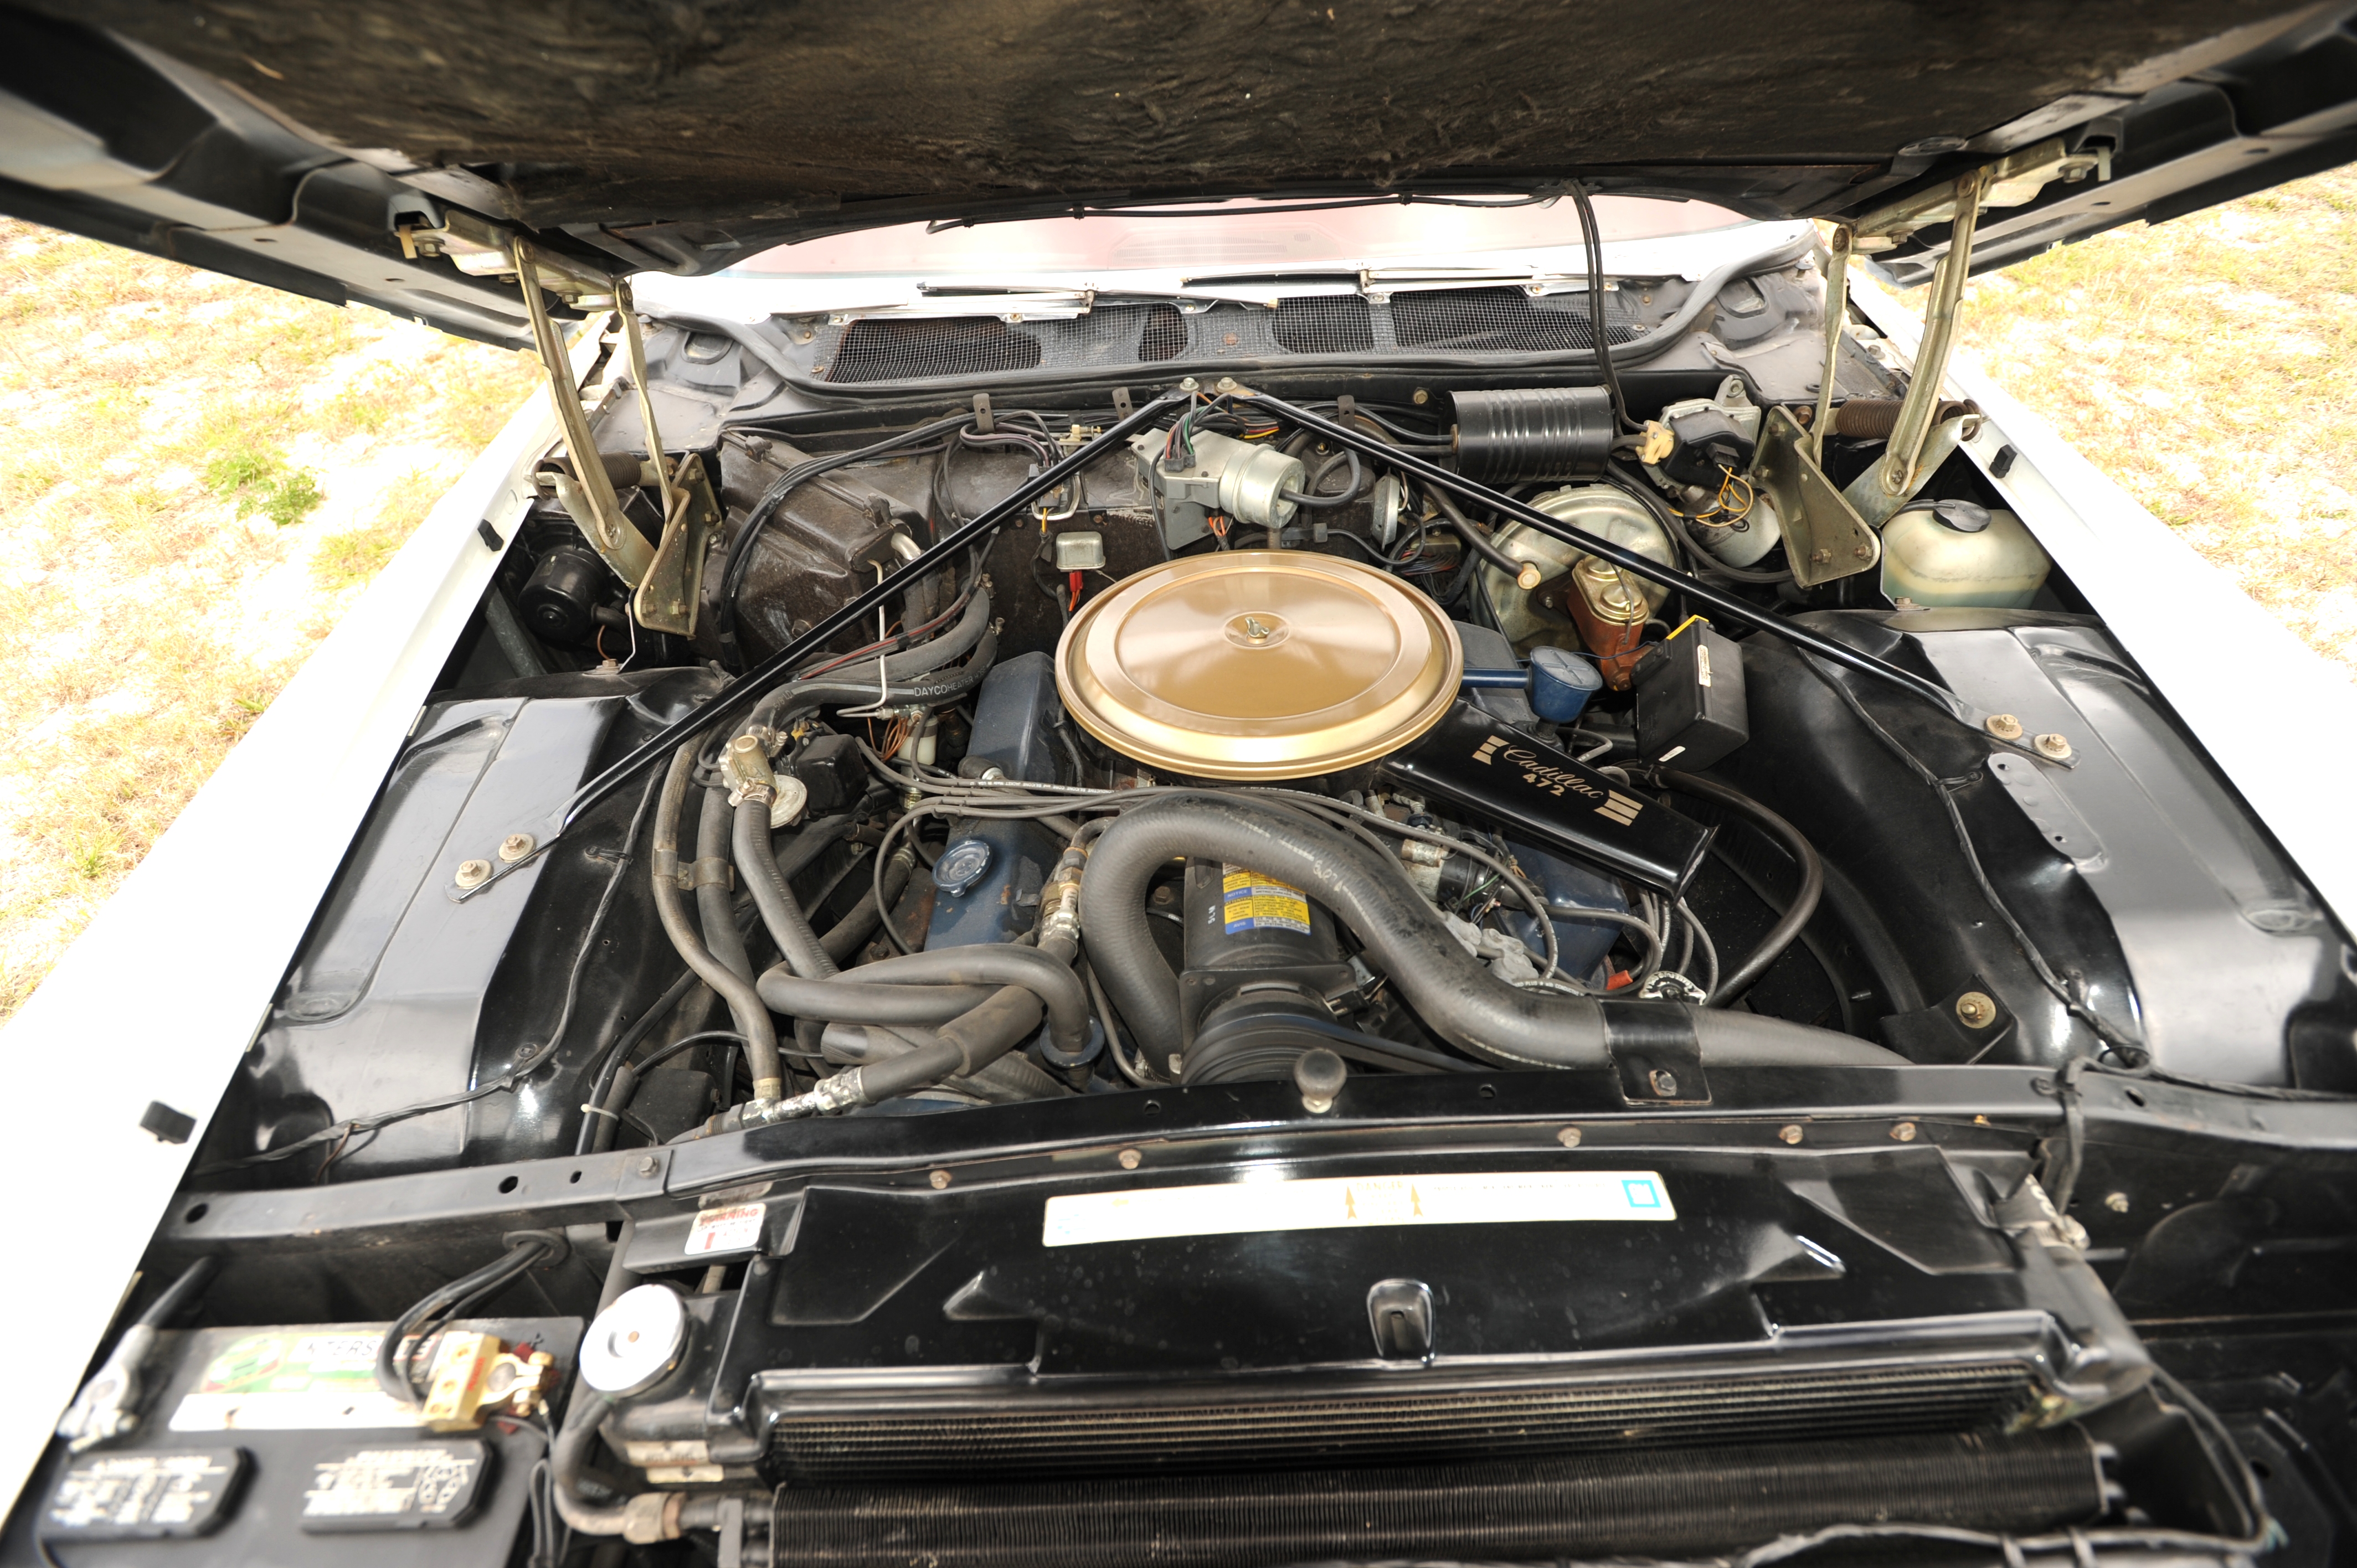 Vibrationsfritt utan färgsläpp, läckage eller reprodelar efter 46 år. Standard of the World - Cadillac. 